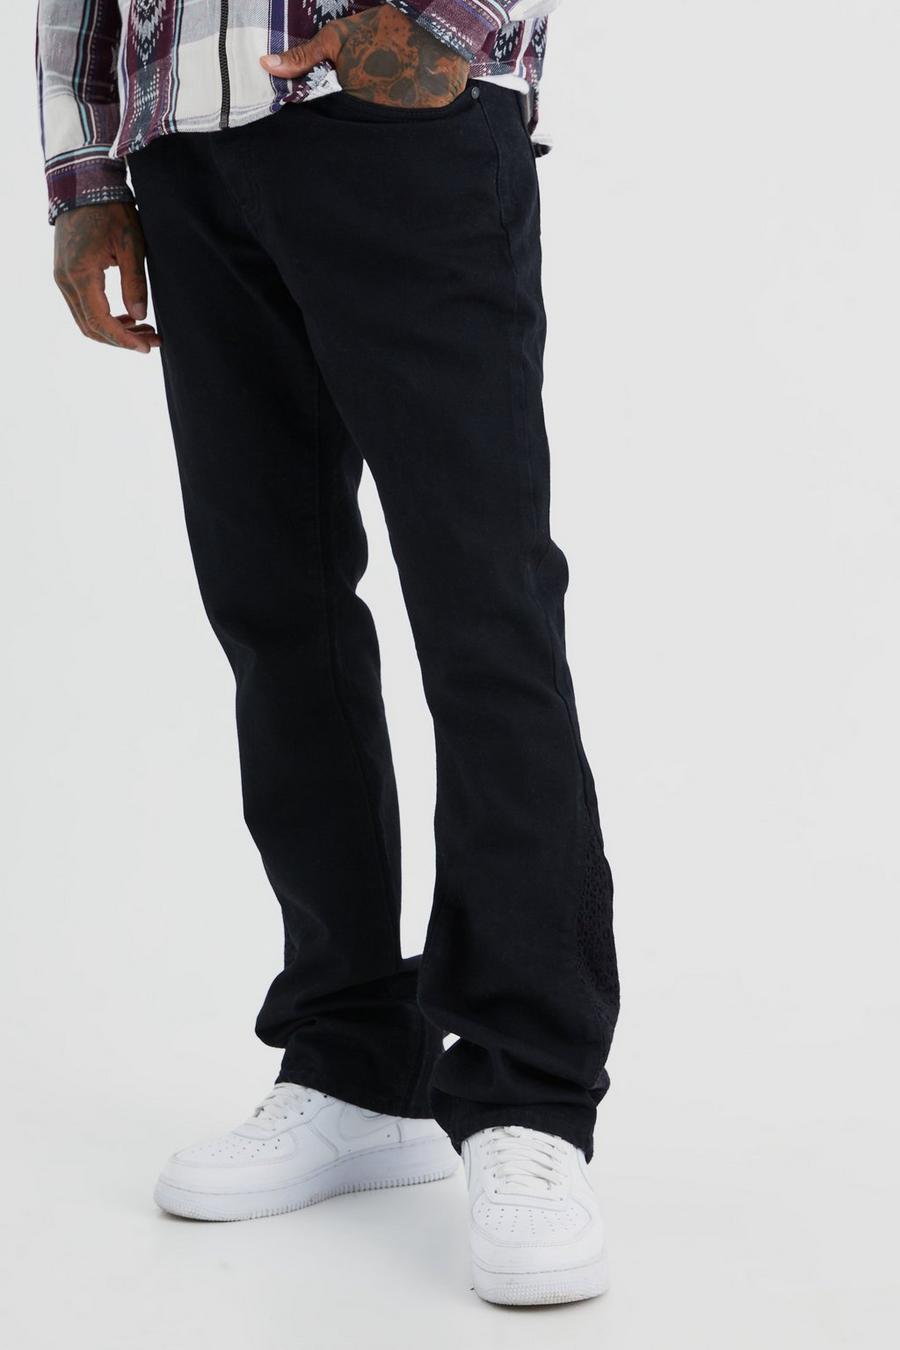 Jeans Slim Fit in denim rigido all’uncinetto con dettagli a zampa, True black